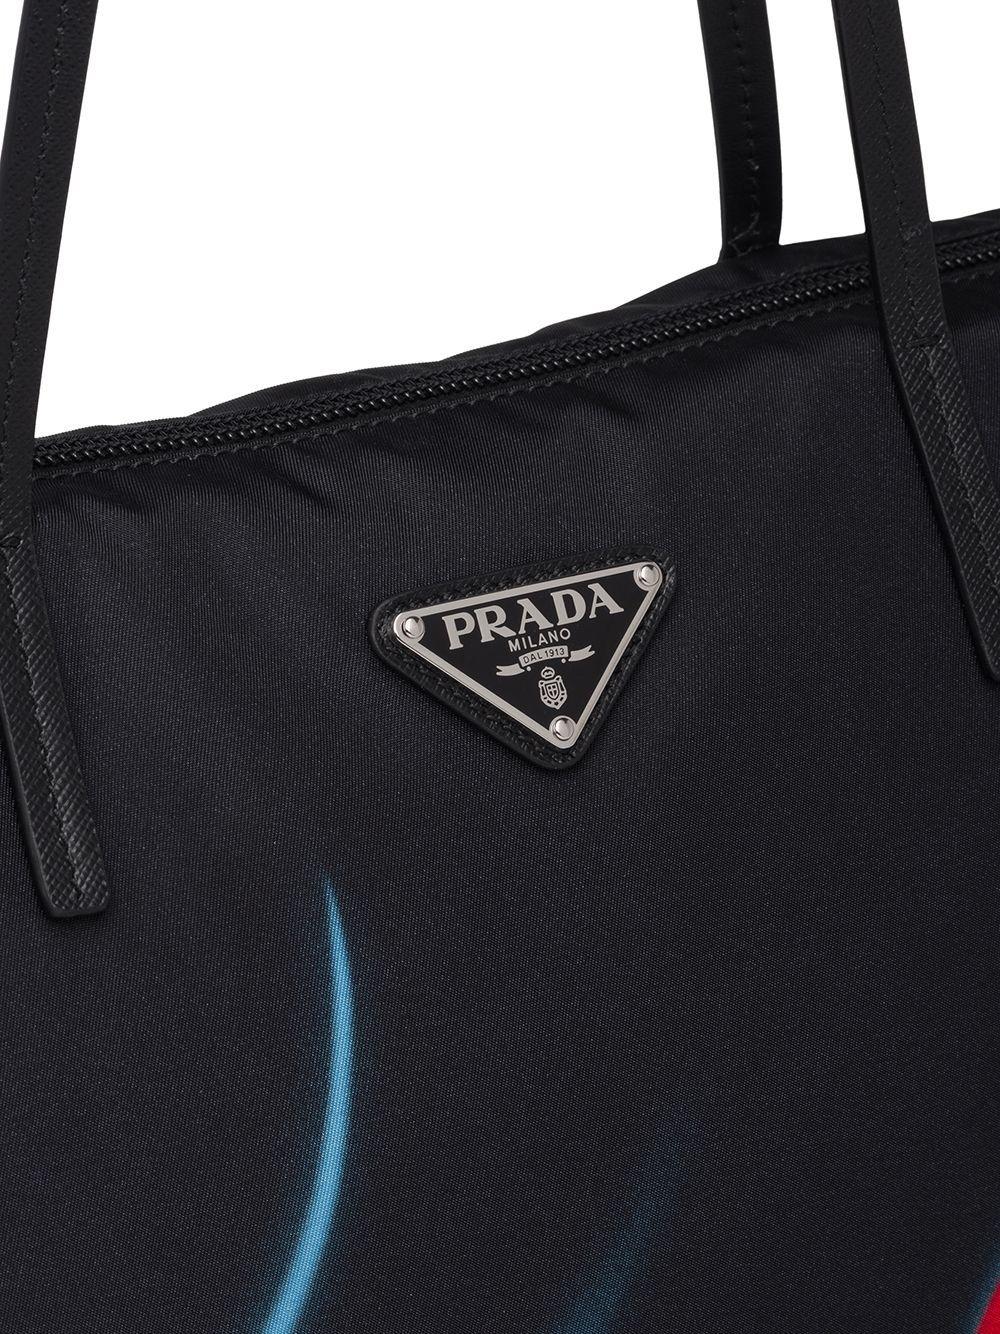 Prada Twin Set Tote Bag in Black